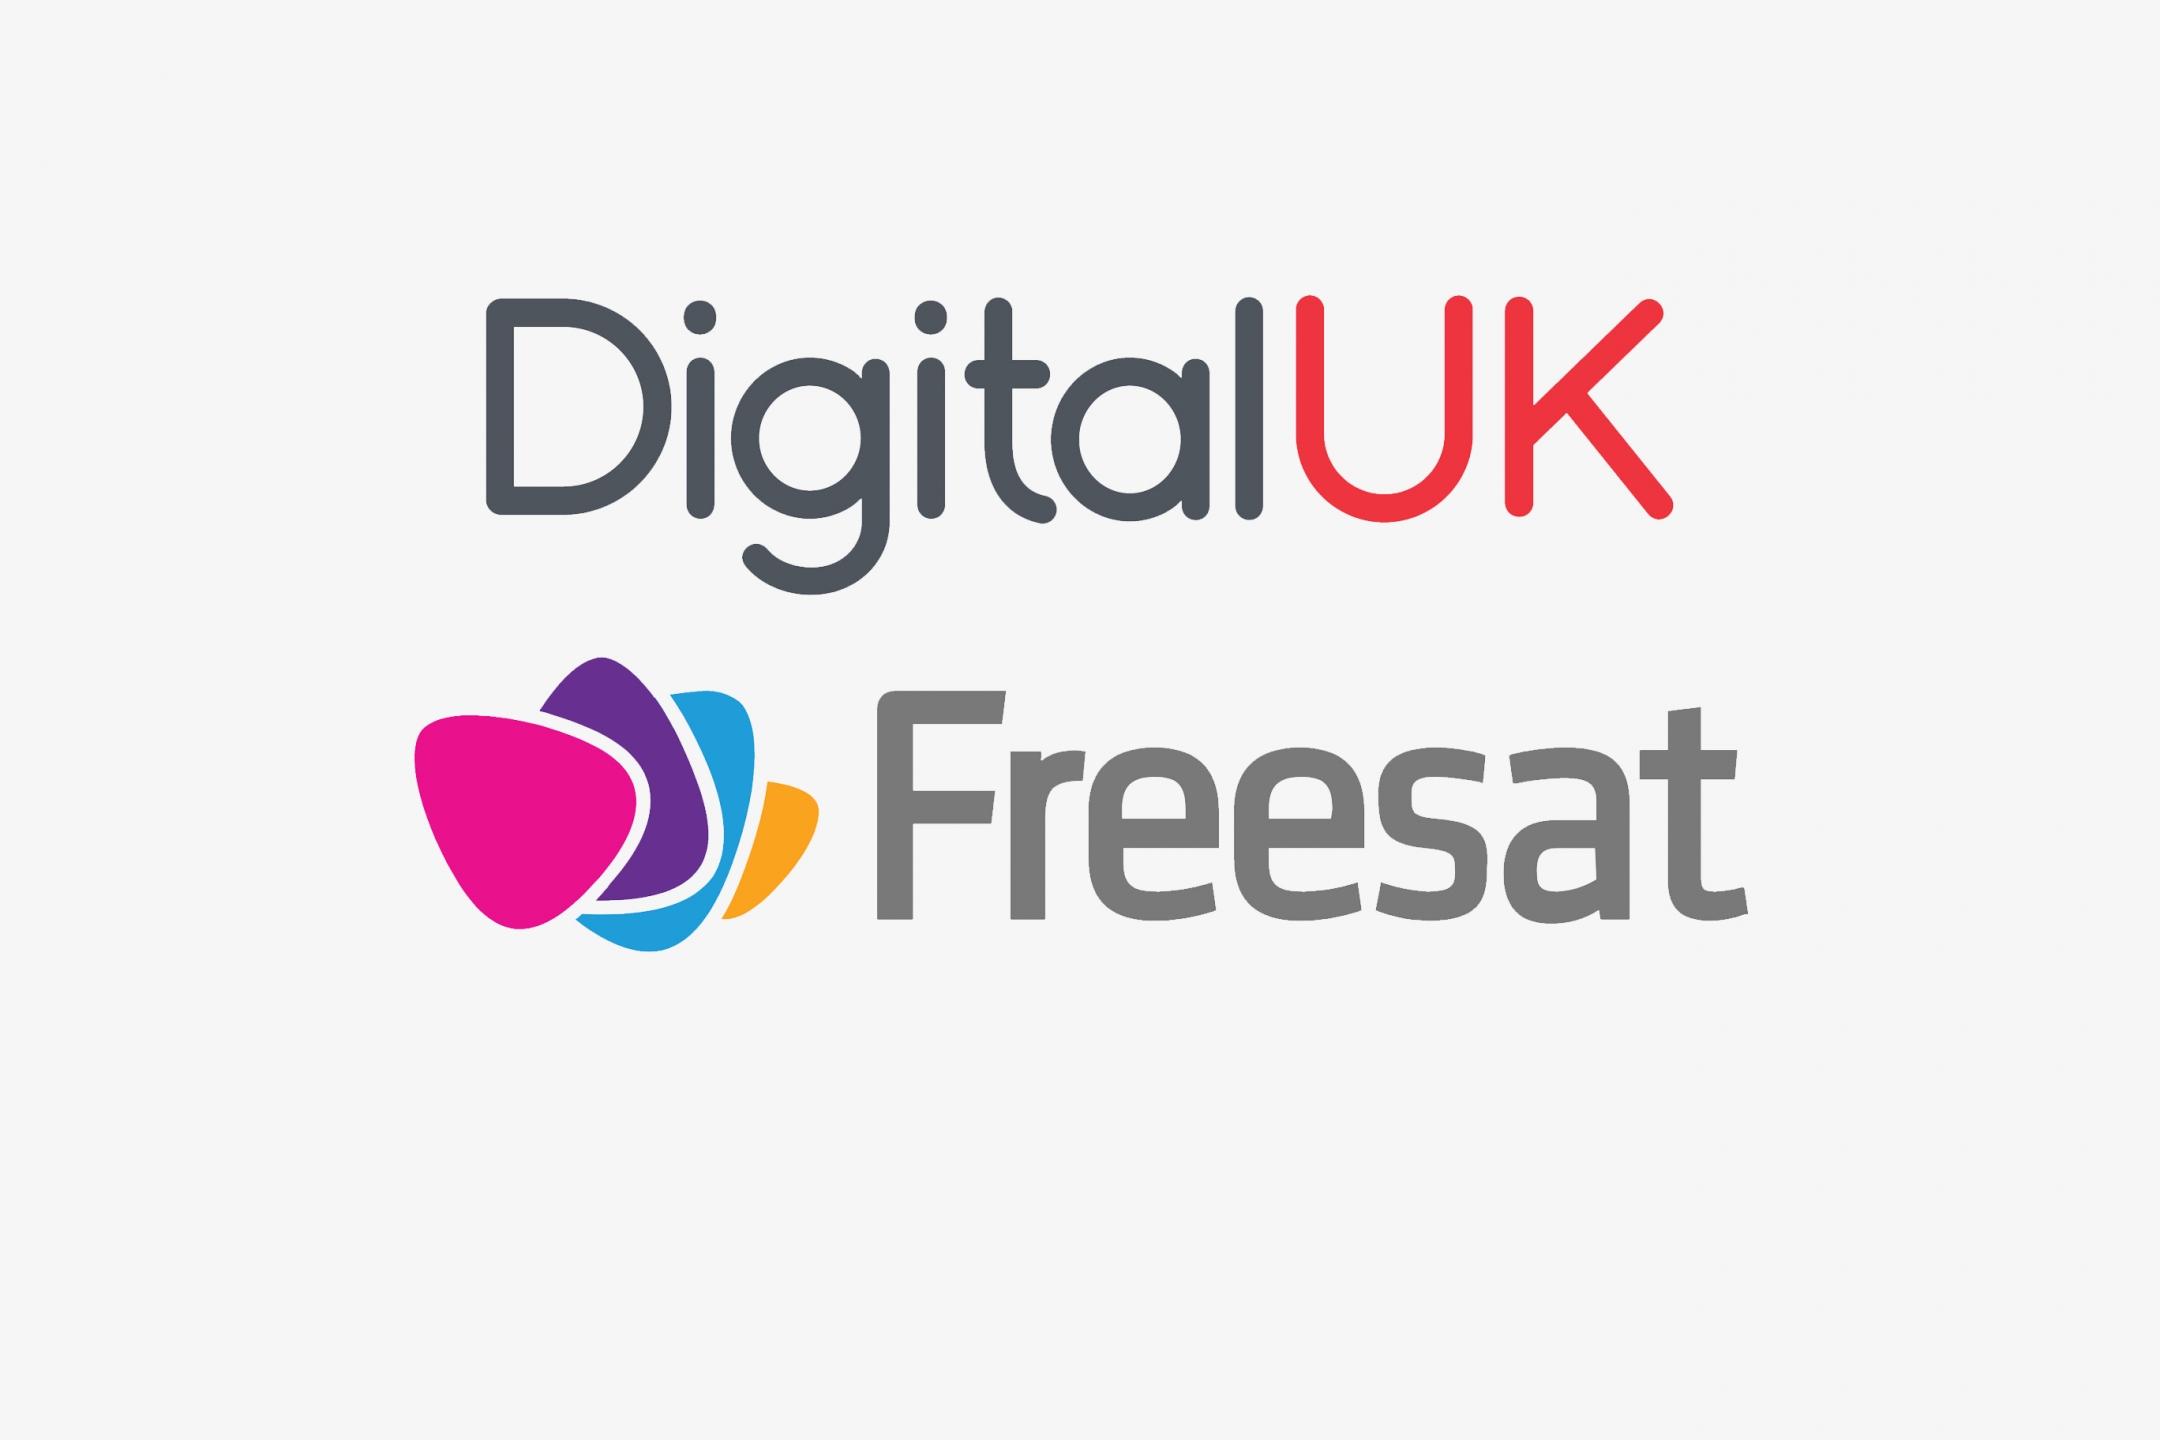 Digital UK and Freesat logos